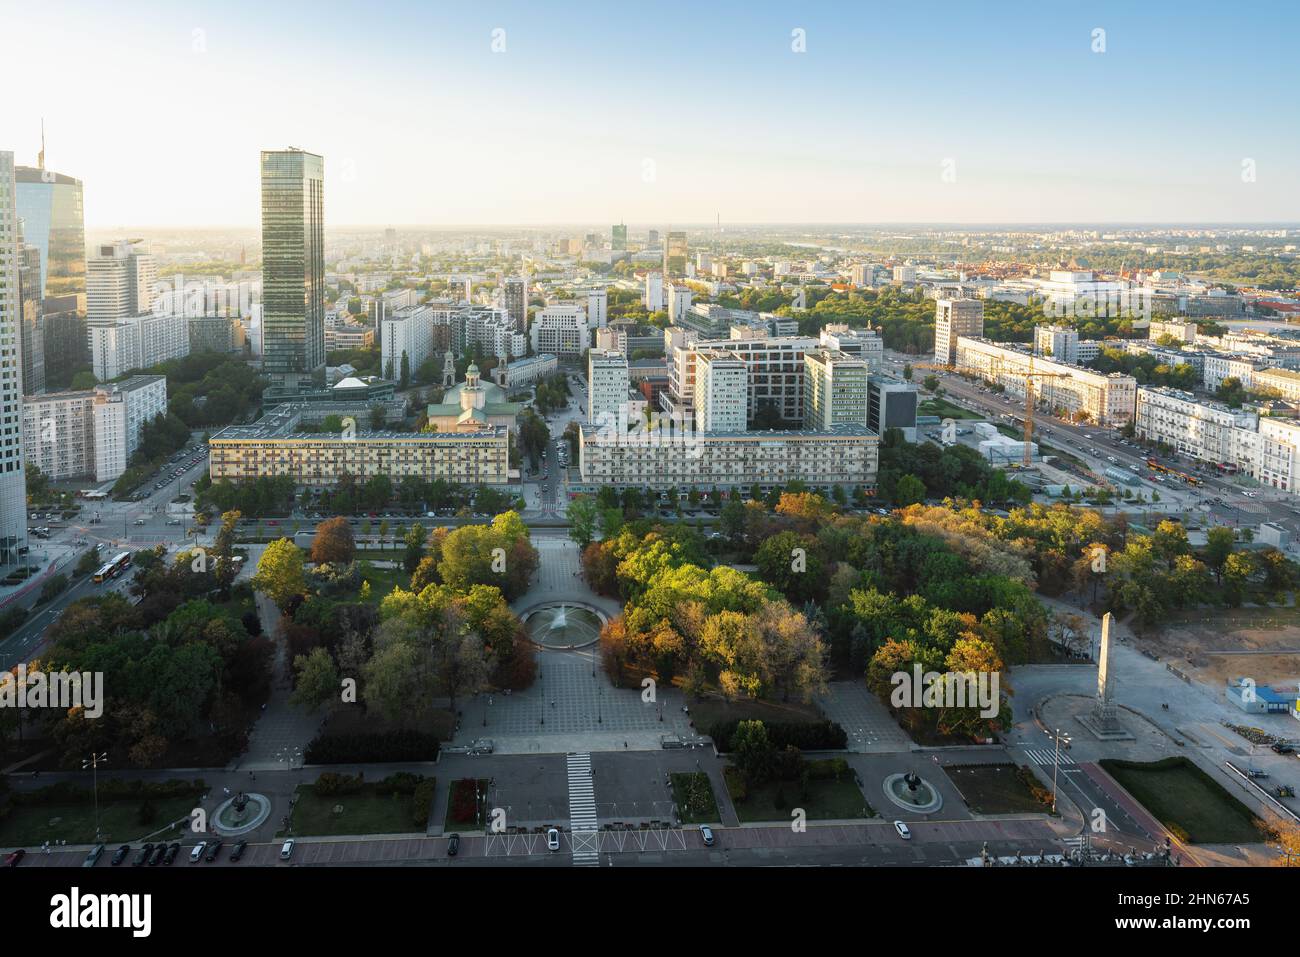 Aerial view of Warsaw city and Swietokrzyski Park - Warsaw, Poland Stock Photo